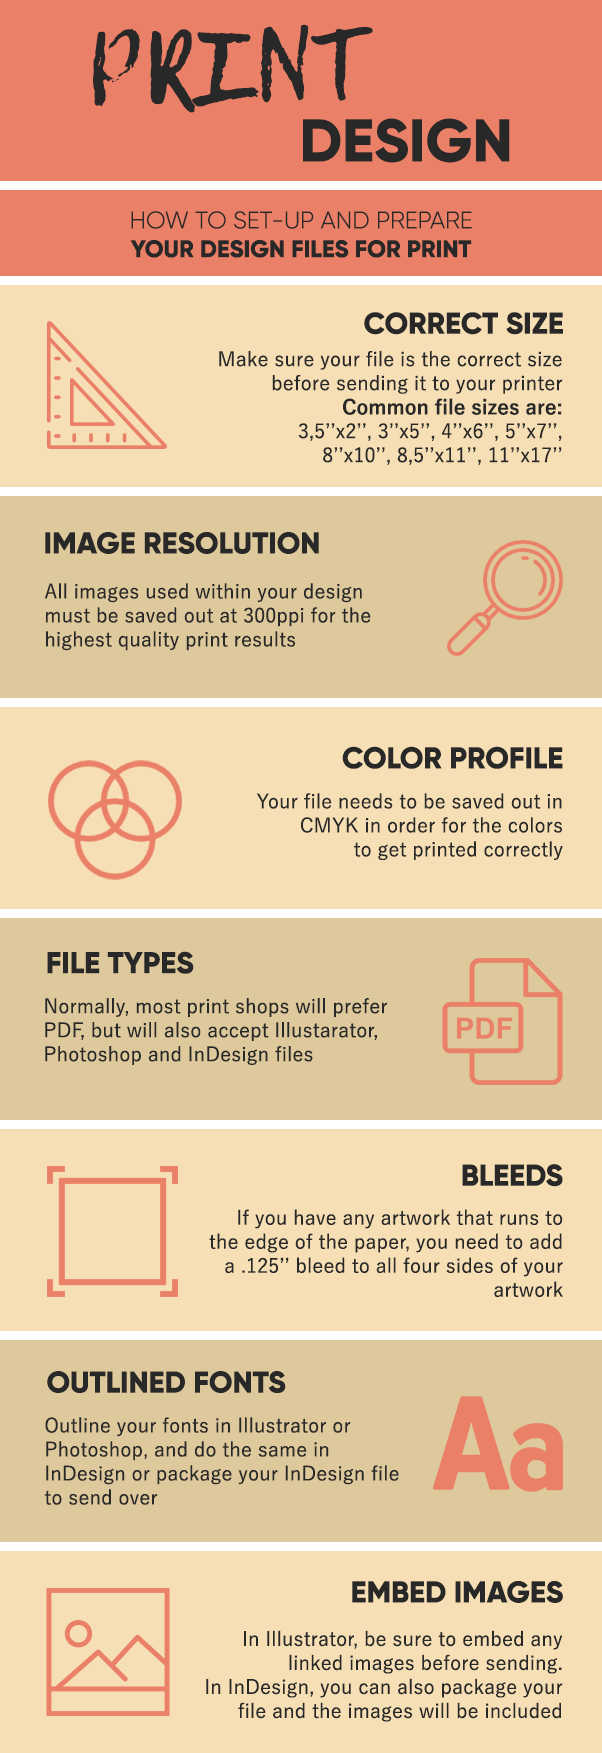 prepare files for print design